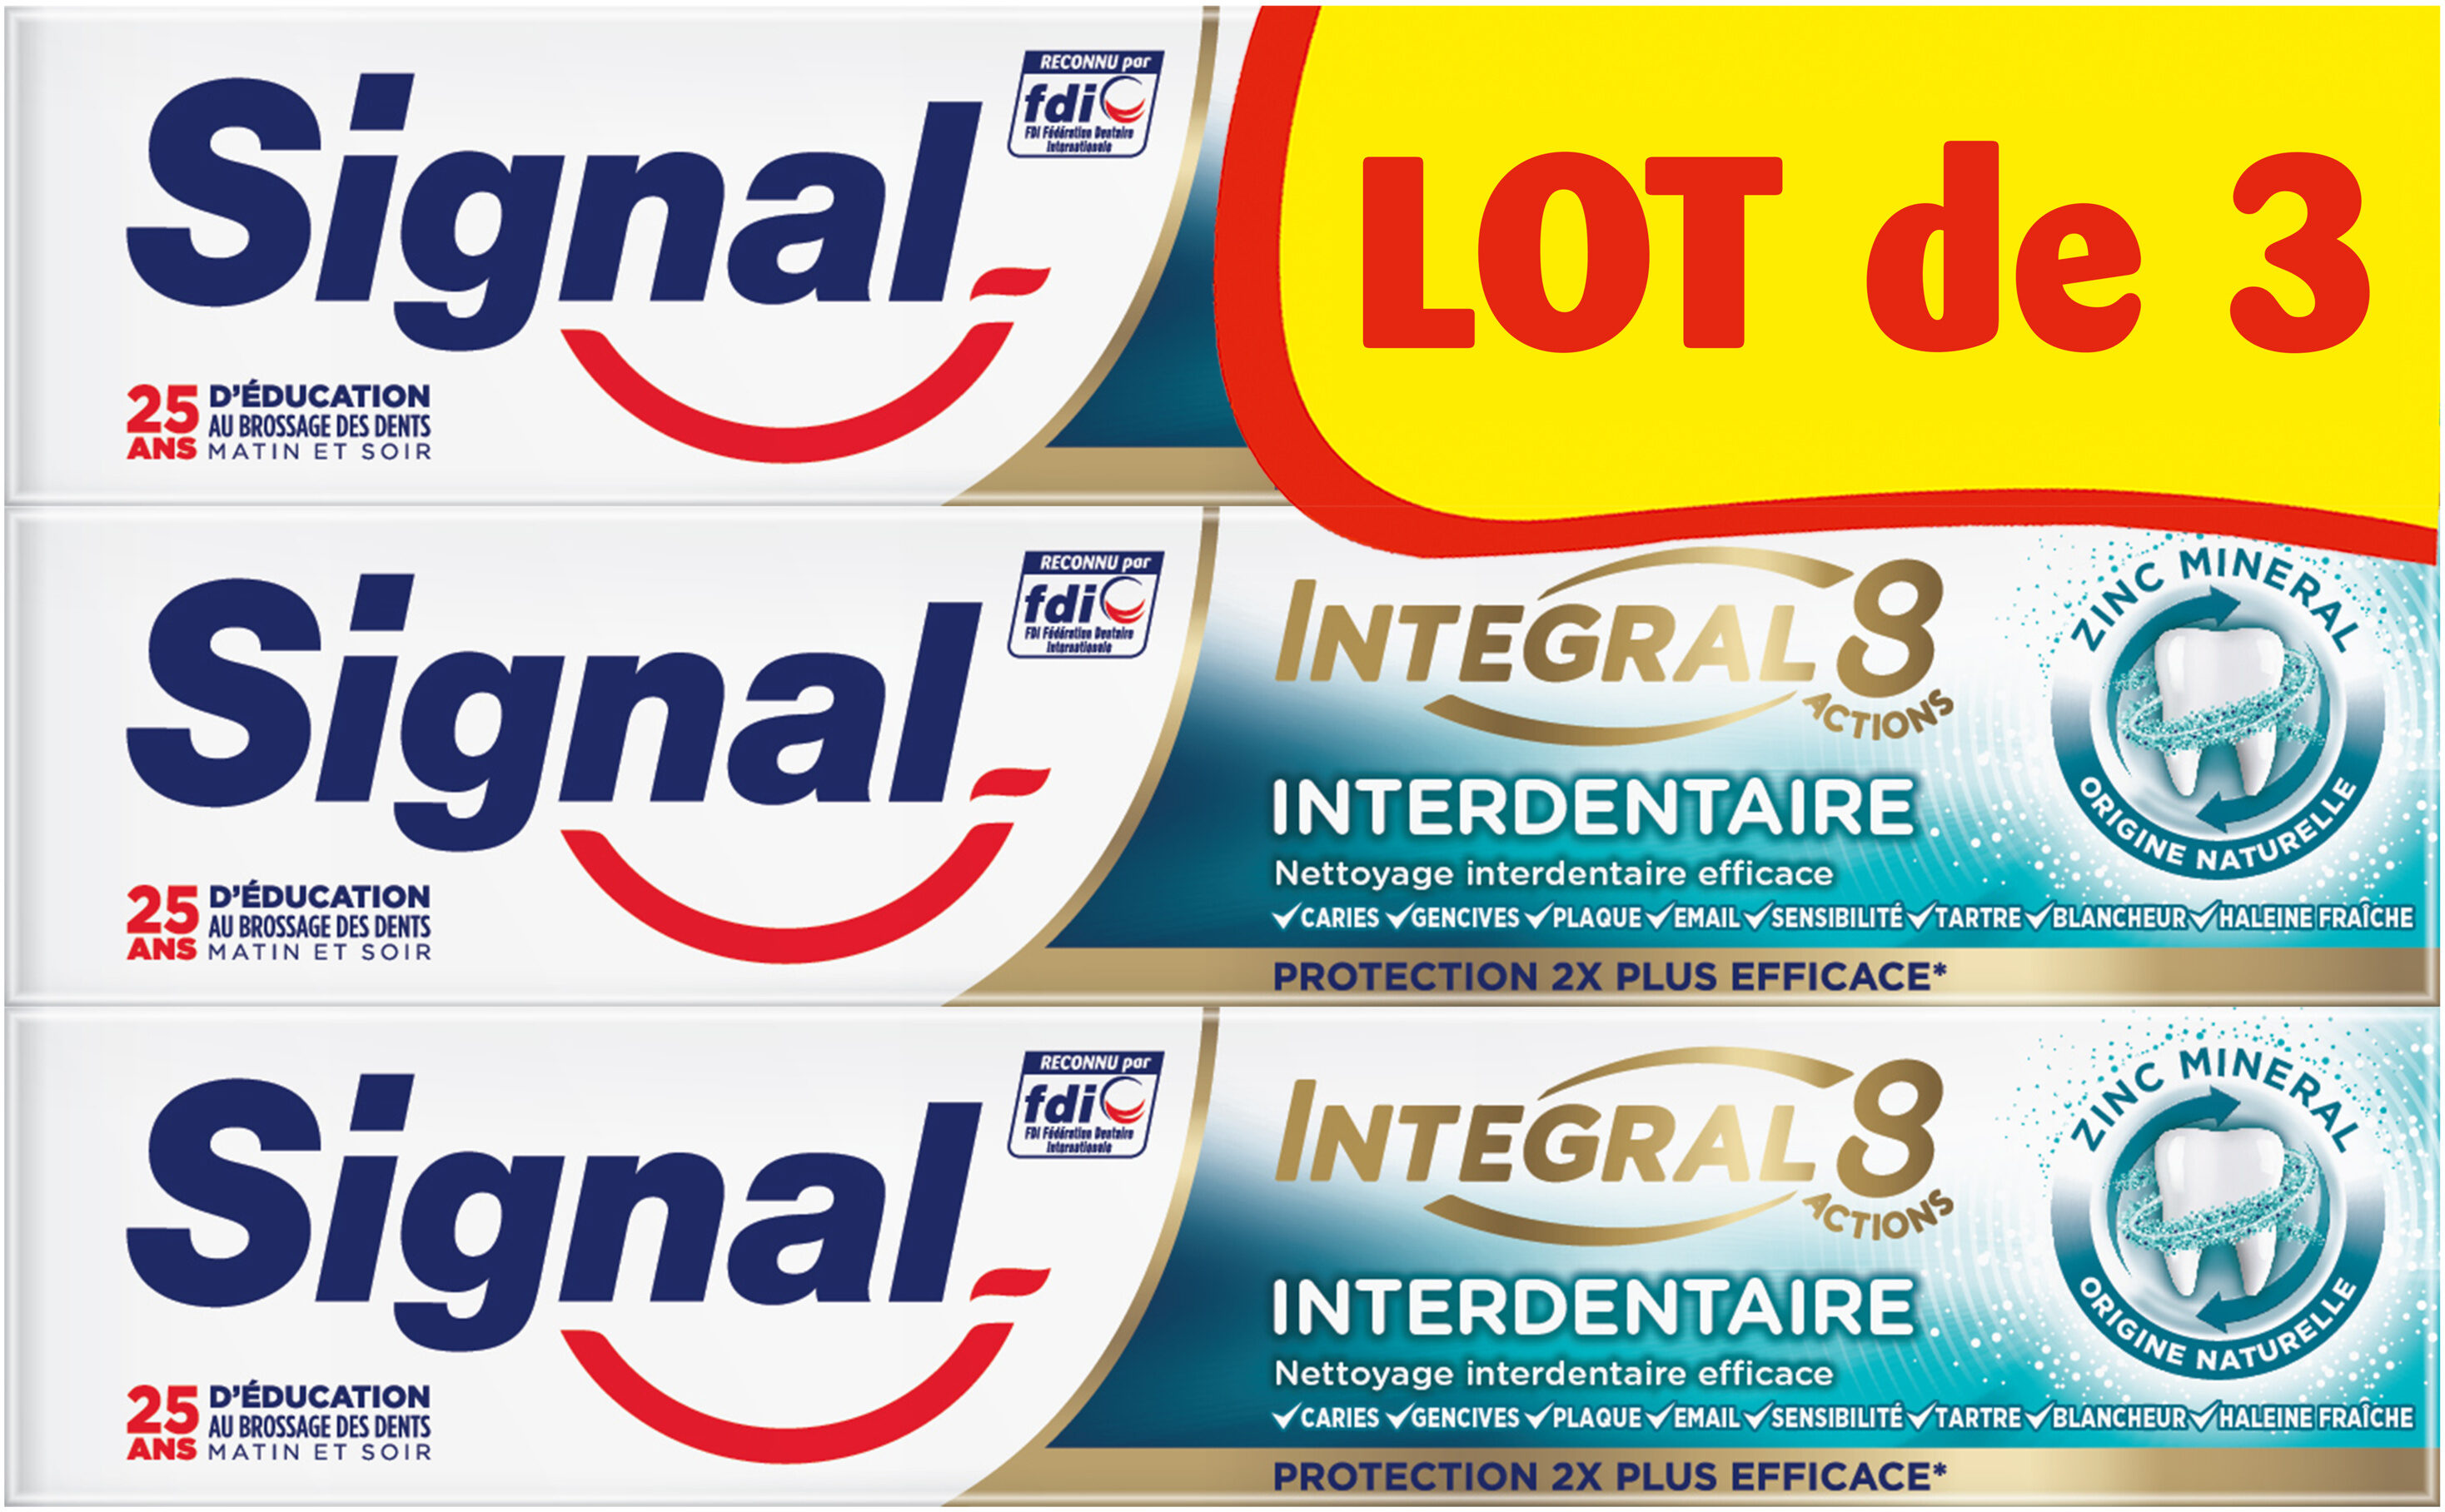 Signal Dentifrice Integral 8 Interdentaire 75ml Lot de 3 - Produit - fr